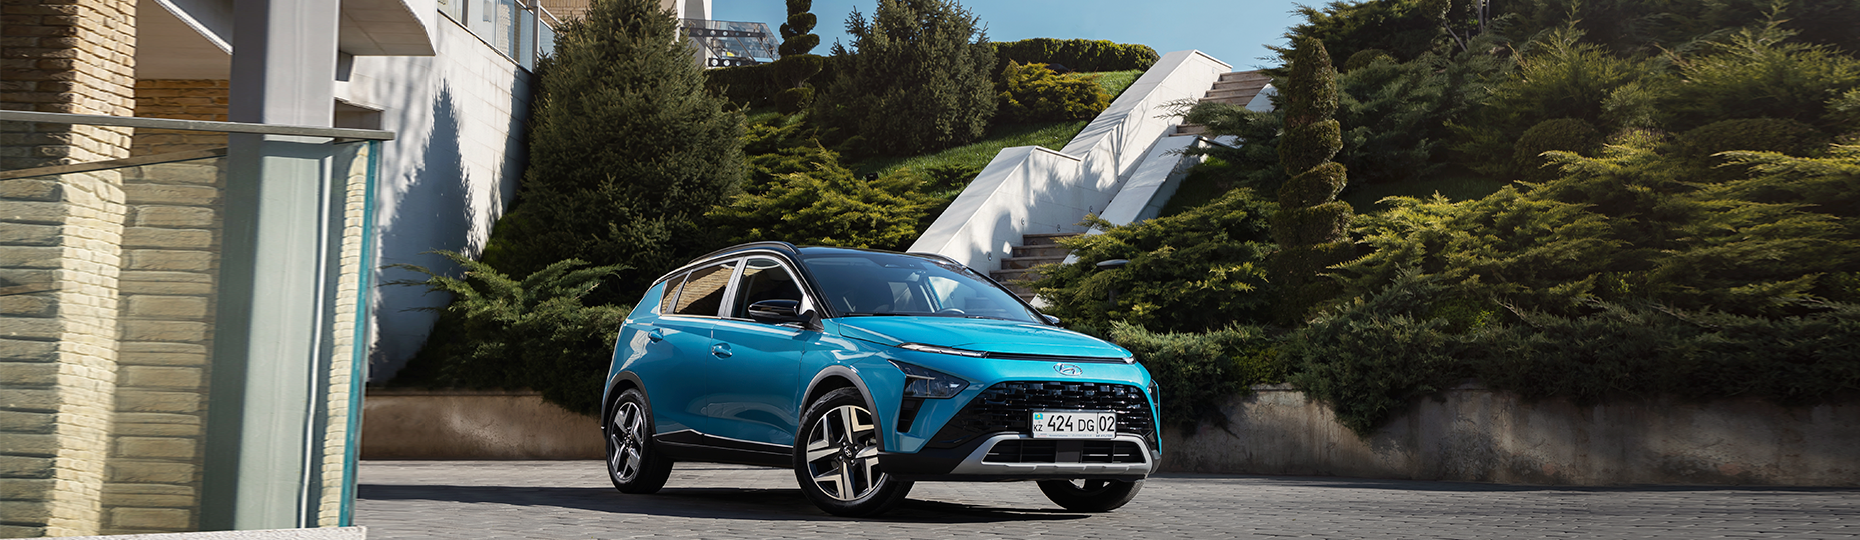 Производительность нового Hyundai Bayon | Официальный дилер в Шымкенте